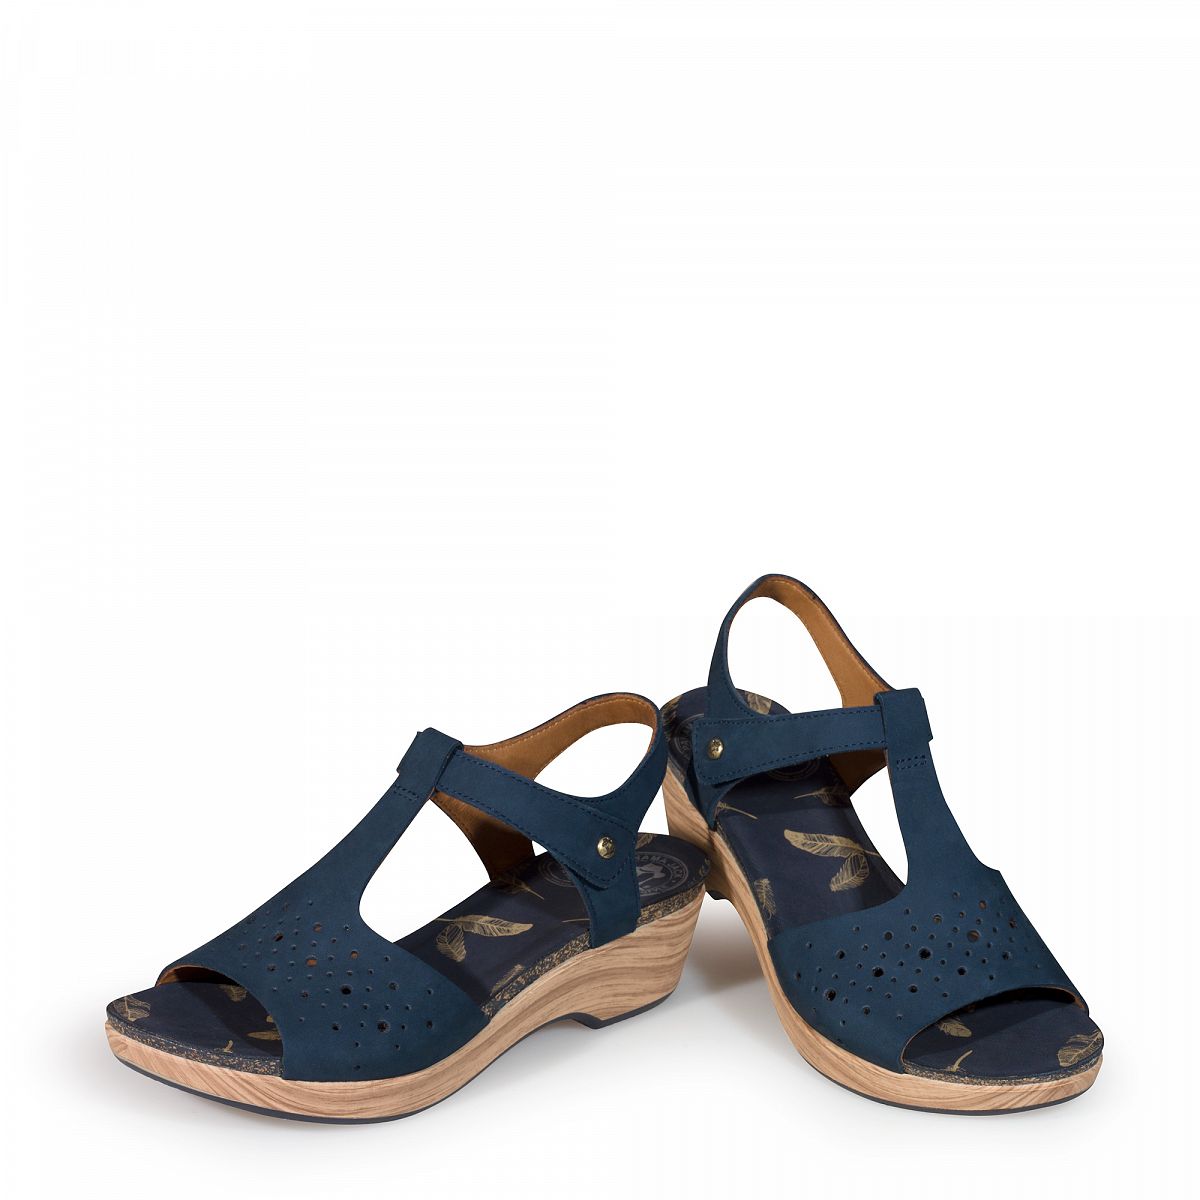 Women's sandals LUISA blue | PANAMA JACK Official Online Shop